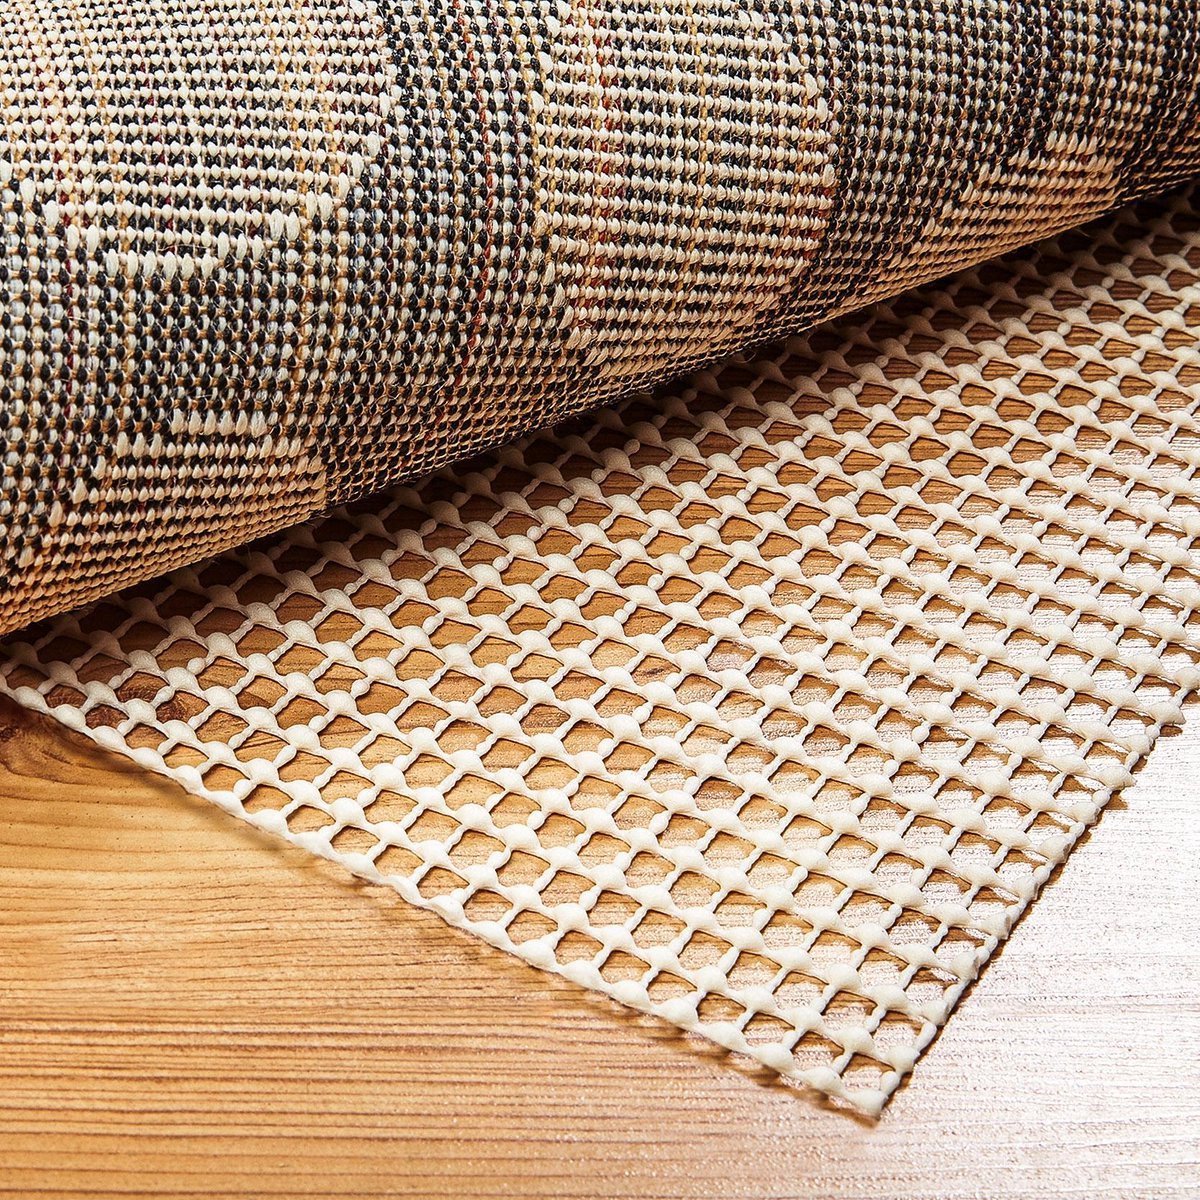 Antislipmat 80 cm Breed - Op Rol Per Meter Kopen - Antislip tapijt - Ondertapijt - Onderkleed - Vloerkleed